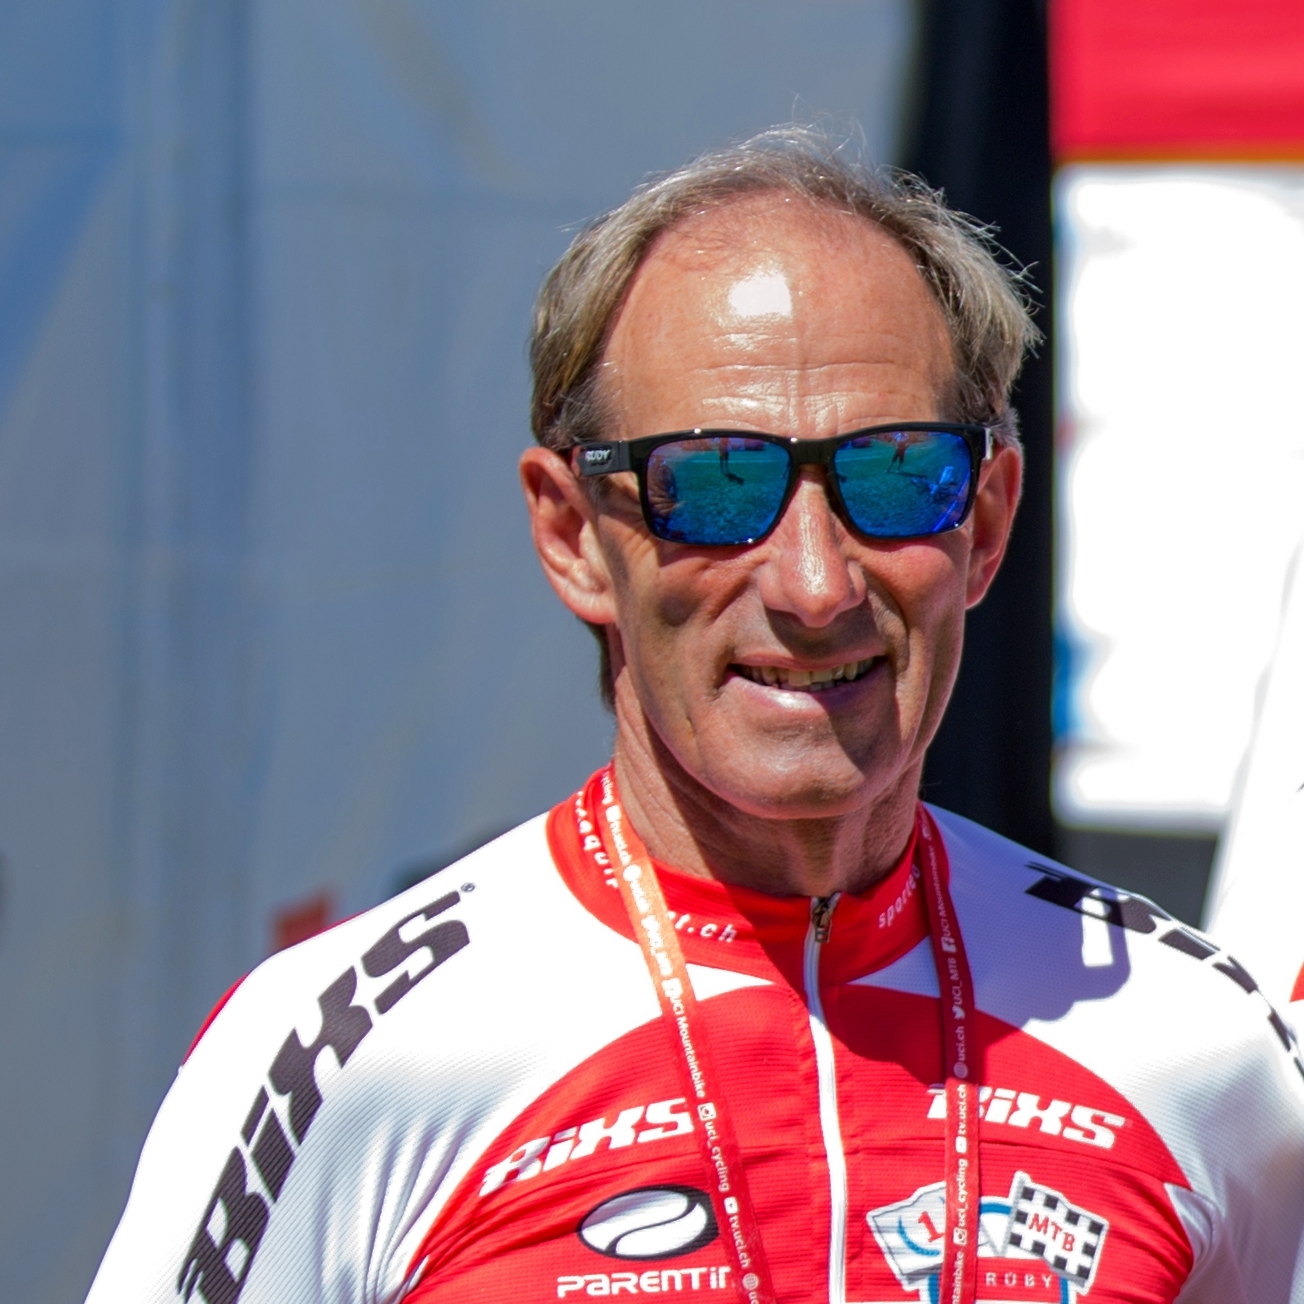 Andreas Kurmann (SUI) - trener i szef Strüby-BiXS Team